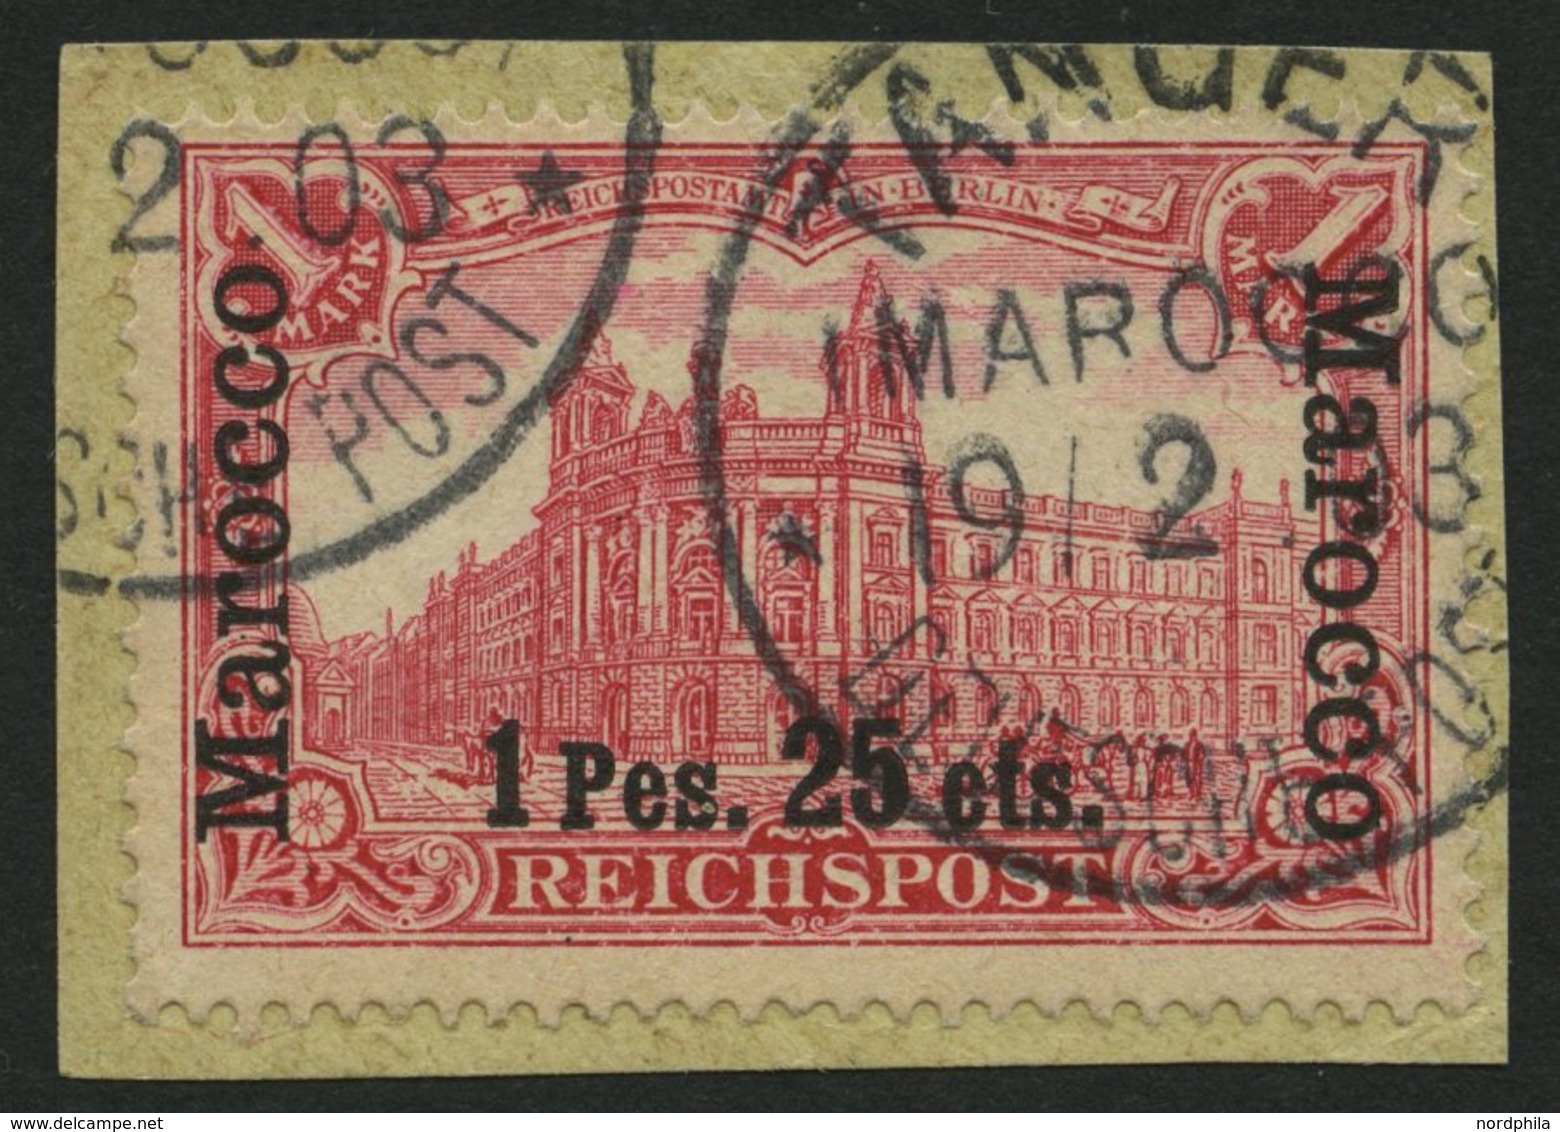 DP IN MAROKKO 16I BrfStk, 1900, 1 P. 25 C. Auf 1 M., Type I, Prachtbriefstück, Gepr. Mansfeld, Mi. 60.- - Morocco (offices)